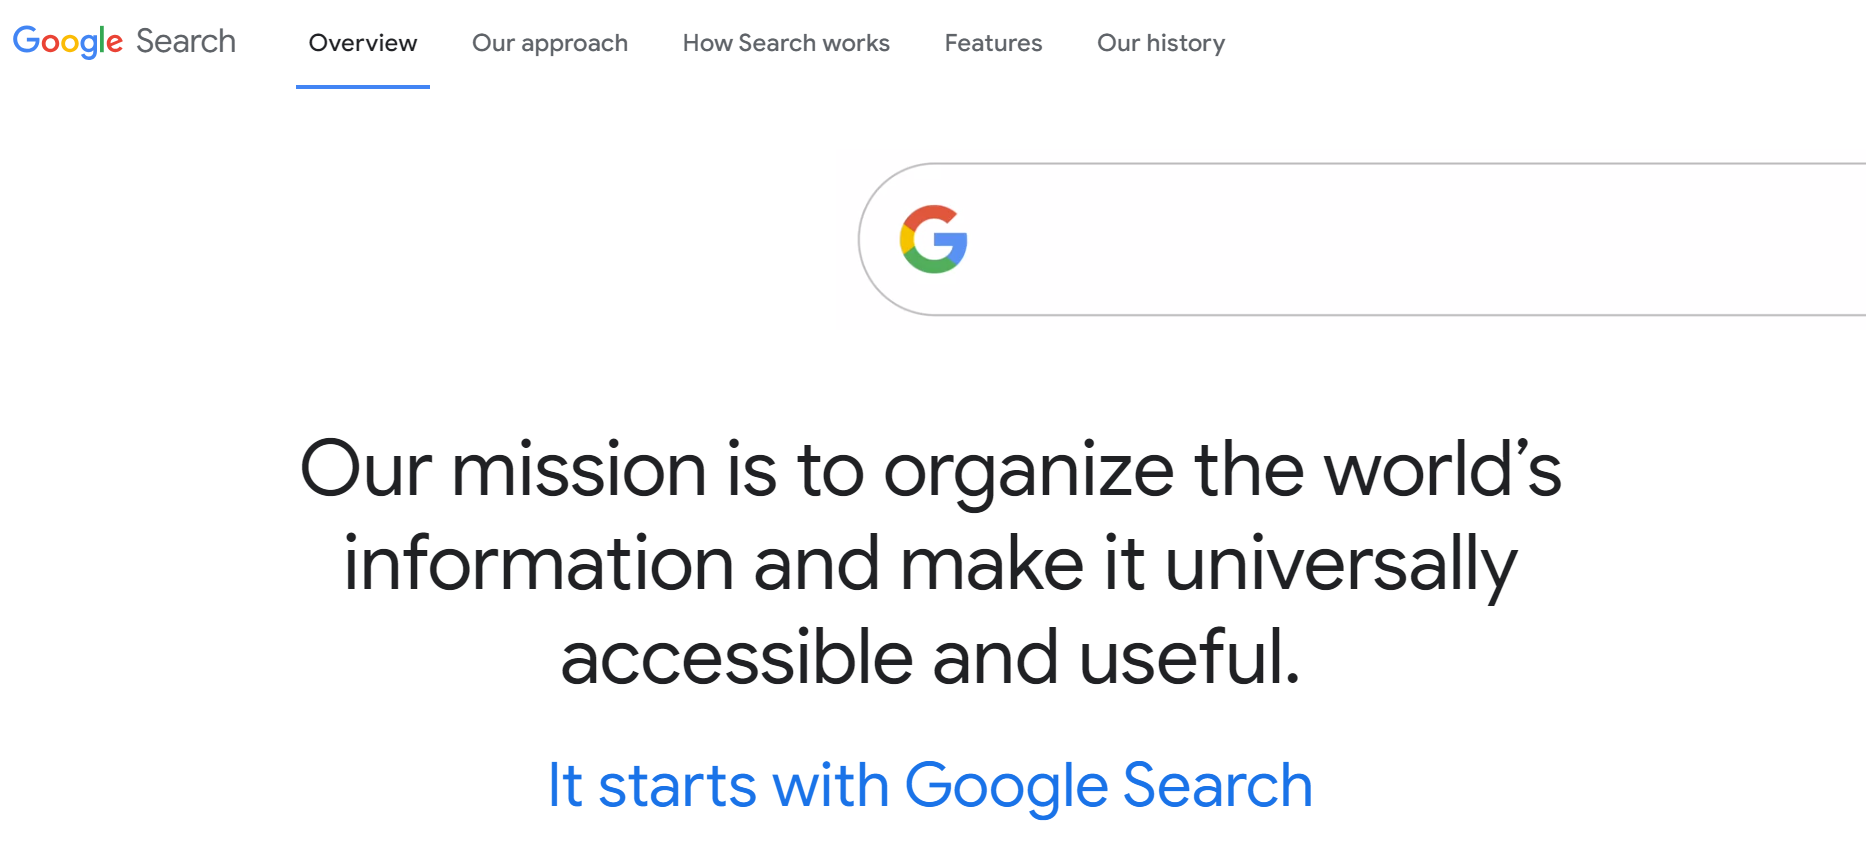 déclaration de mission de Google